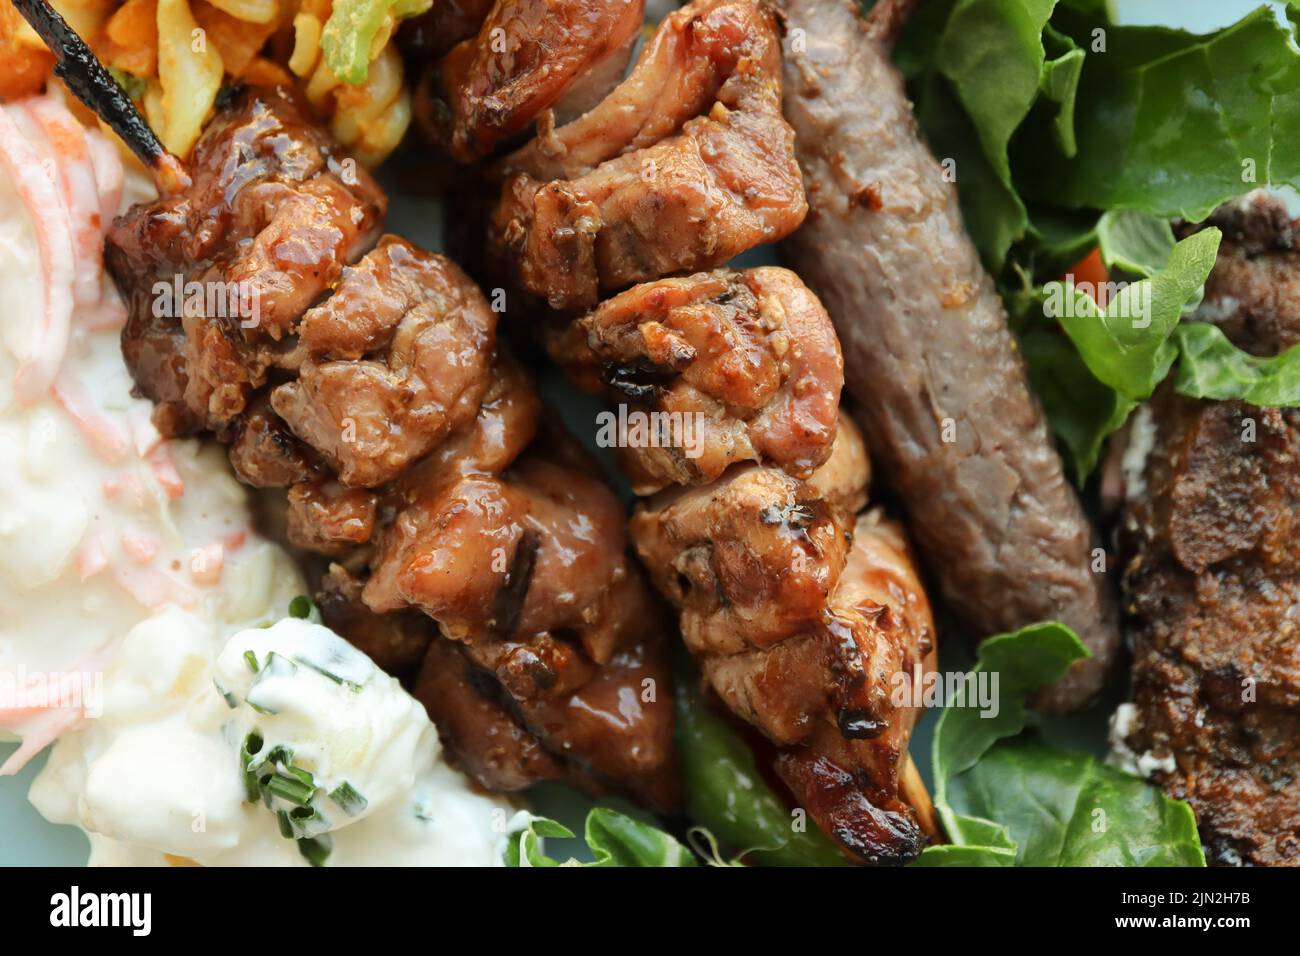 Teller mit Braai-Fleisch und Salaten. Dazu gehören Hühnerkebabs, Boerewors-Wurst, Lammkoteletts, Kartoffelsalat, Krautsalat und Curry-Nudelsalat Stockfoto